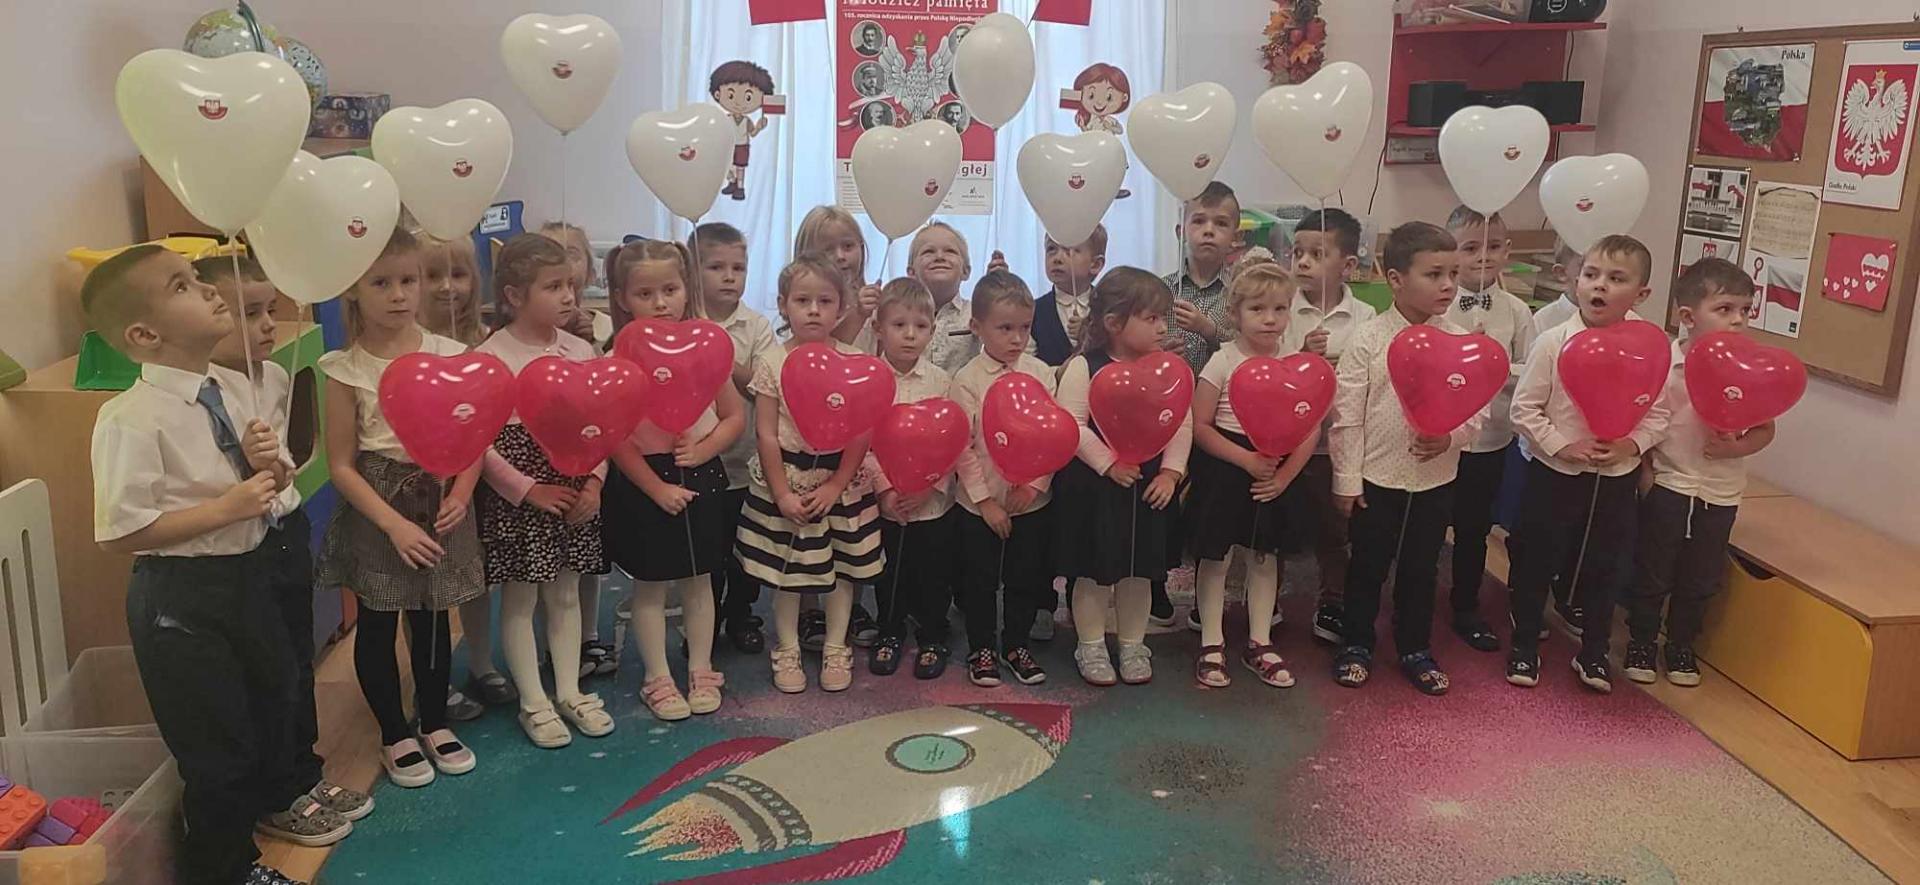 Na zdjęciu znajdują się dzieci trzymające balony w kolorach biało-czerwonych 